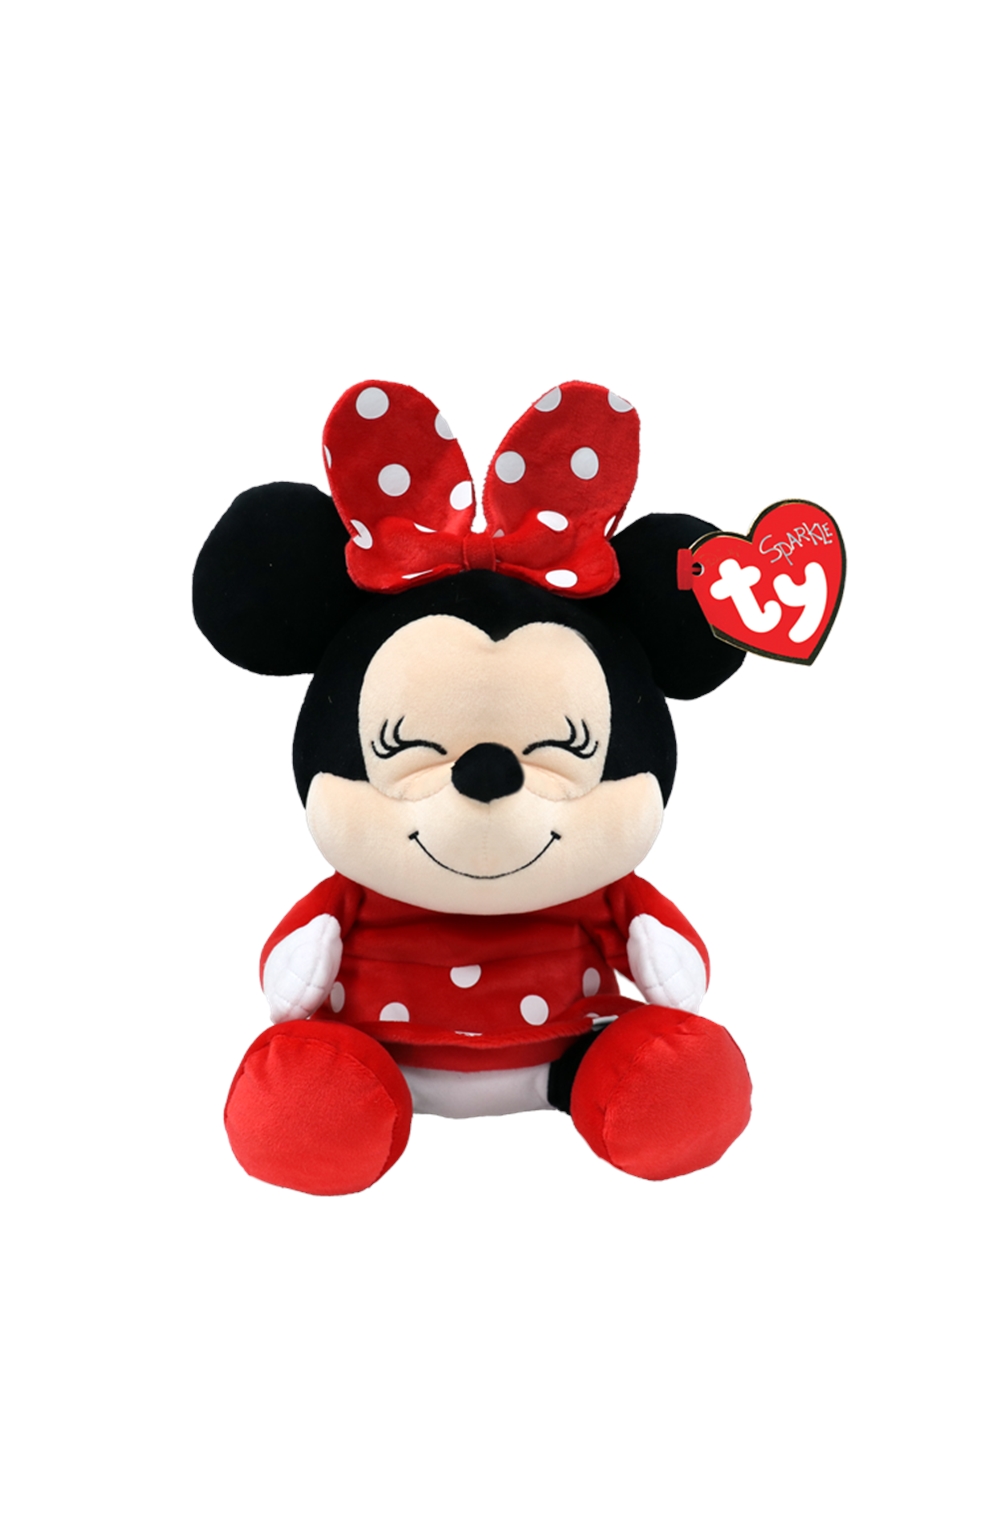 Minnie Mouse - Medium Beanie Baby Plush